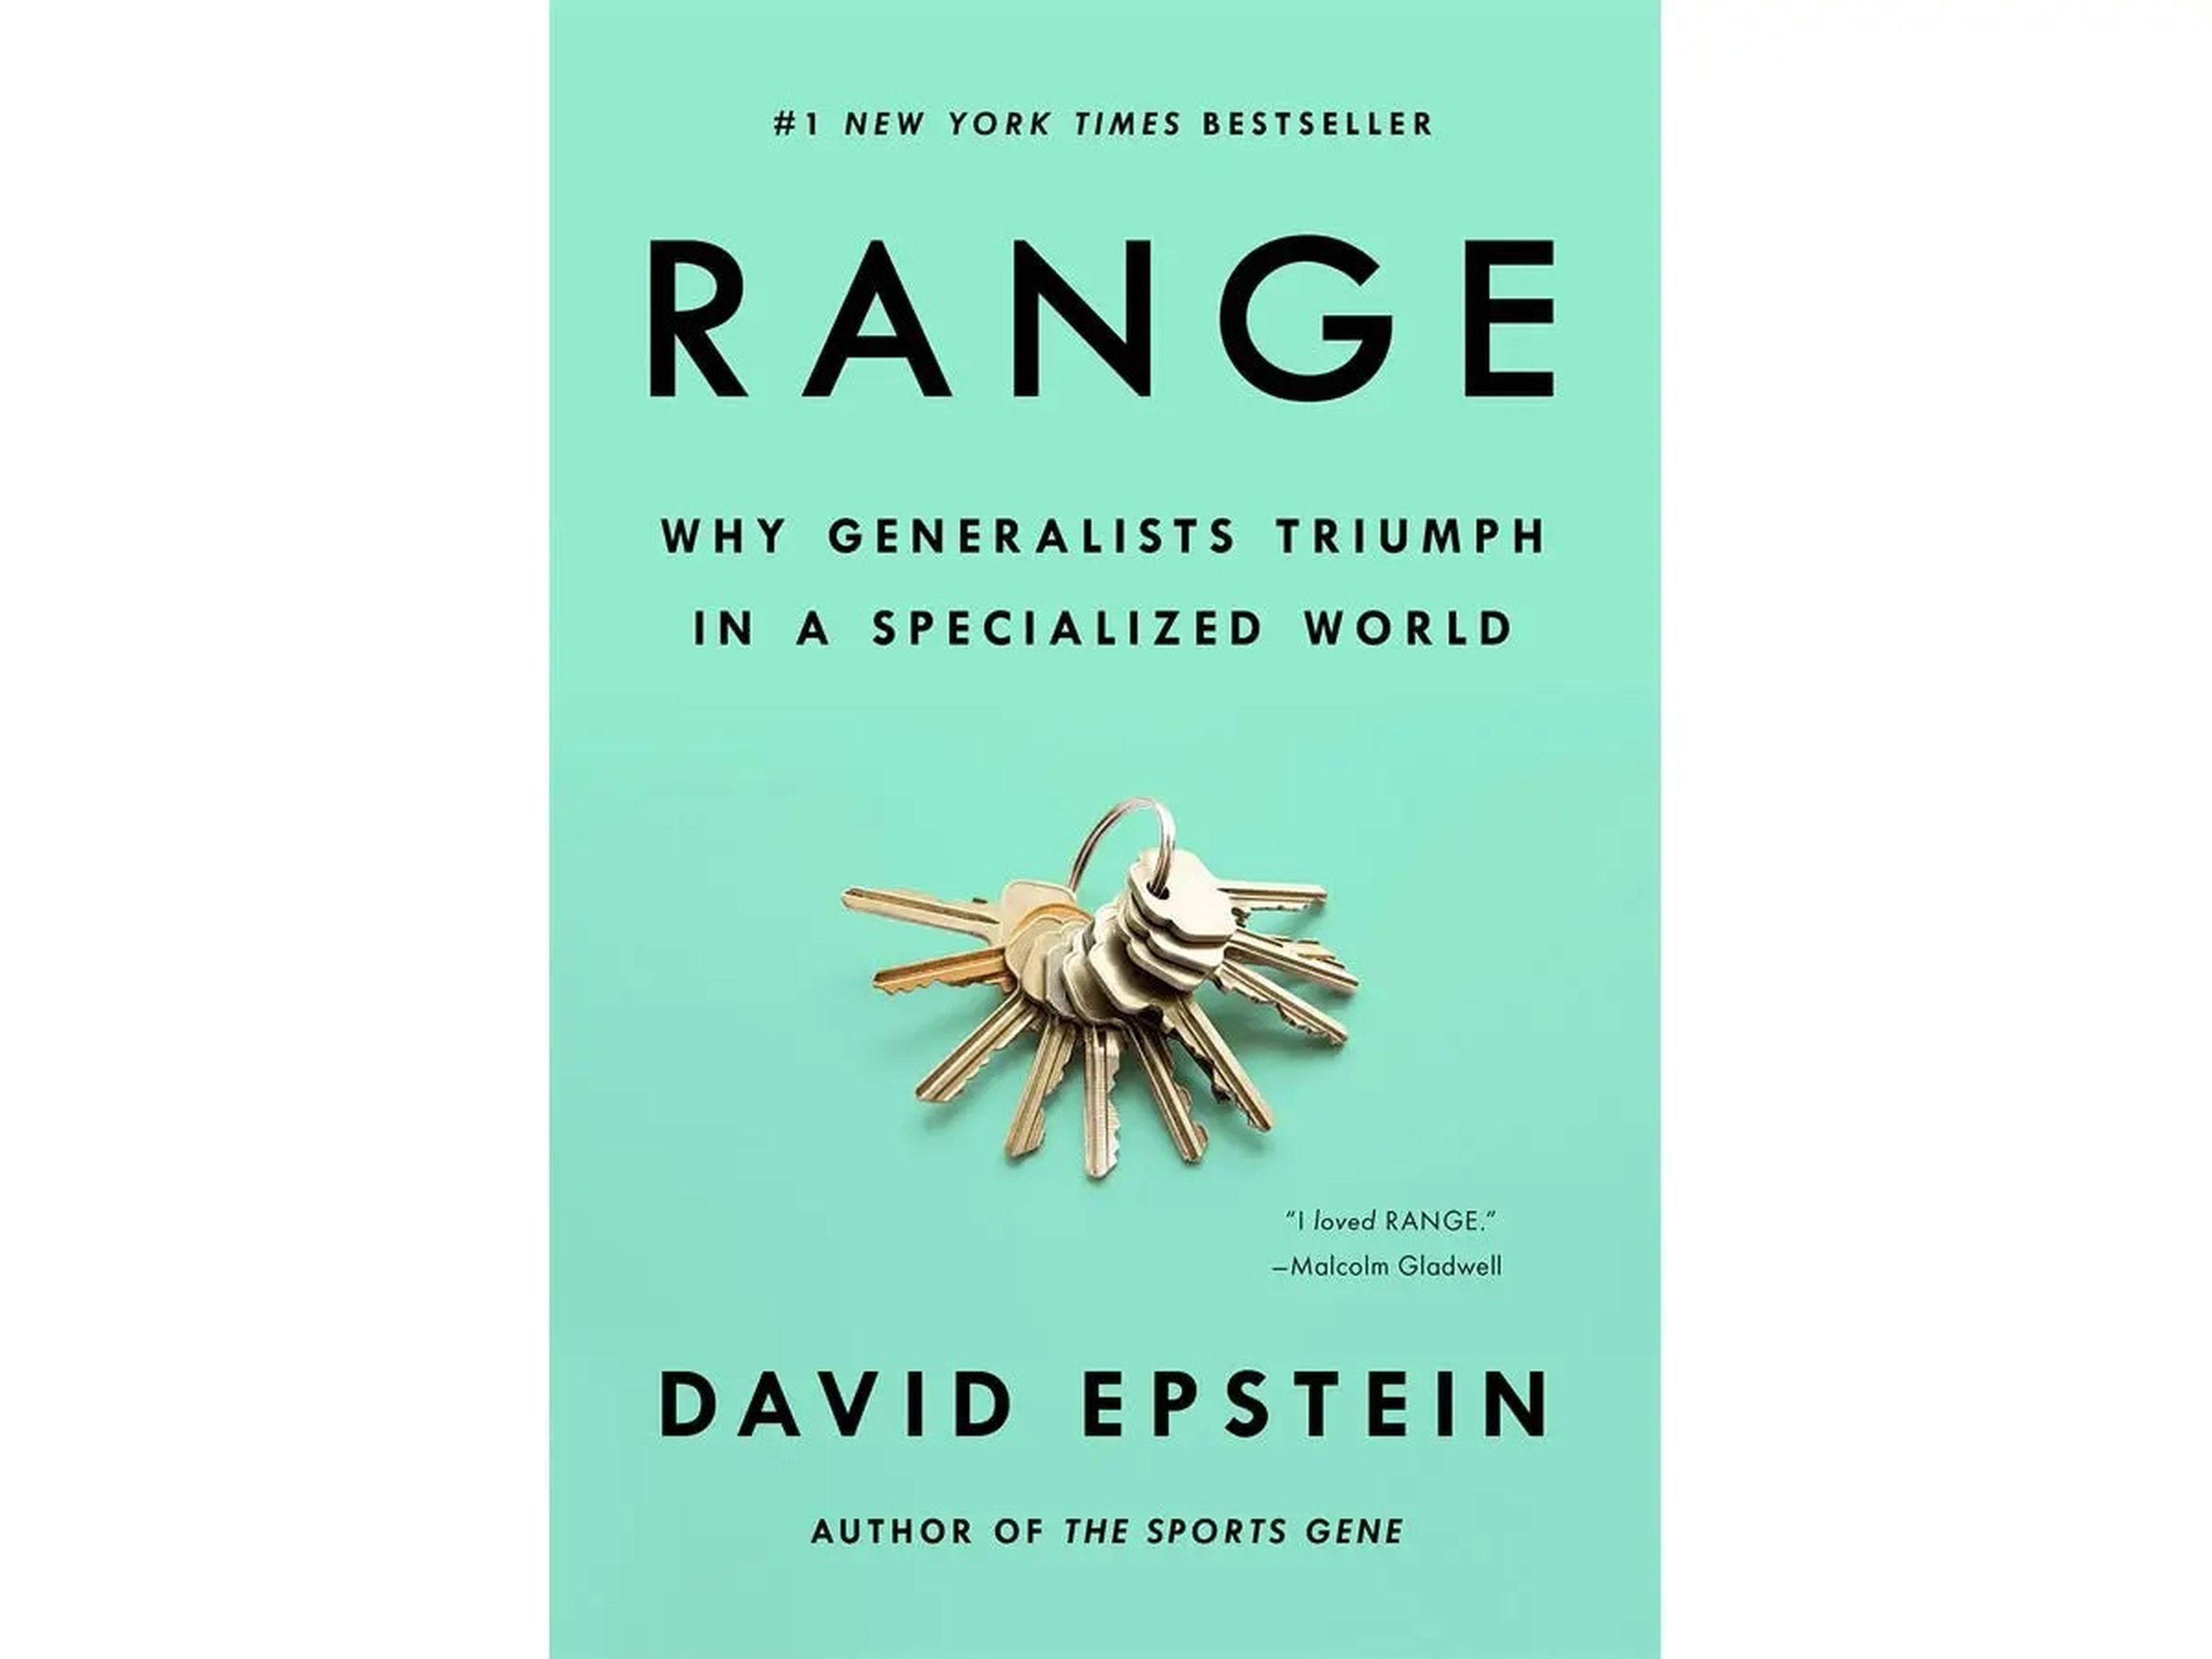 Gama: Por qué los generalistas triunfan en un mundo especializado, de David Epstein.